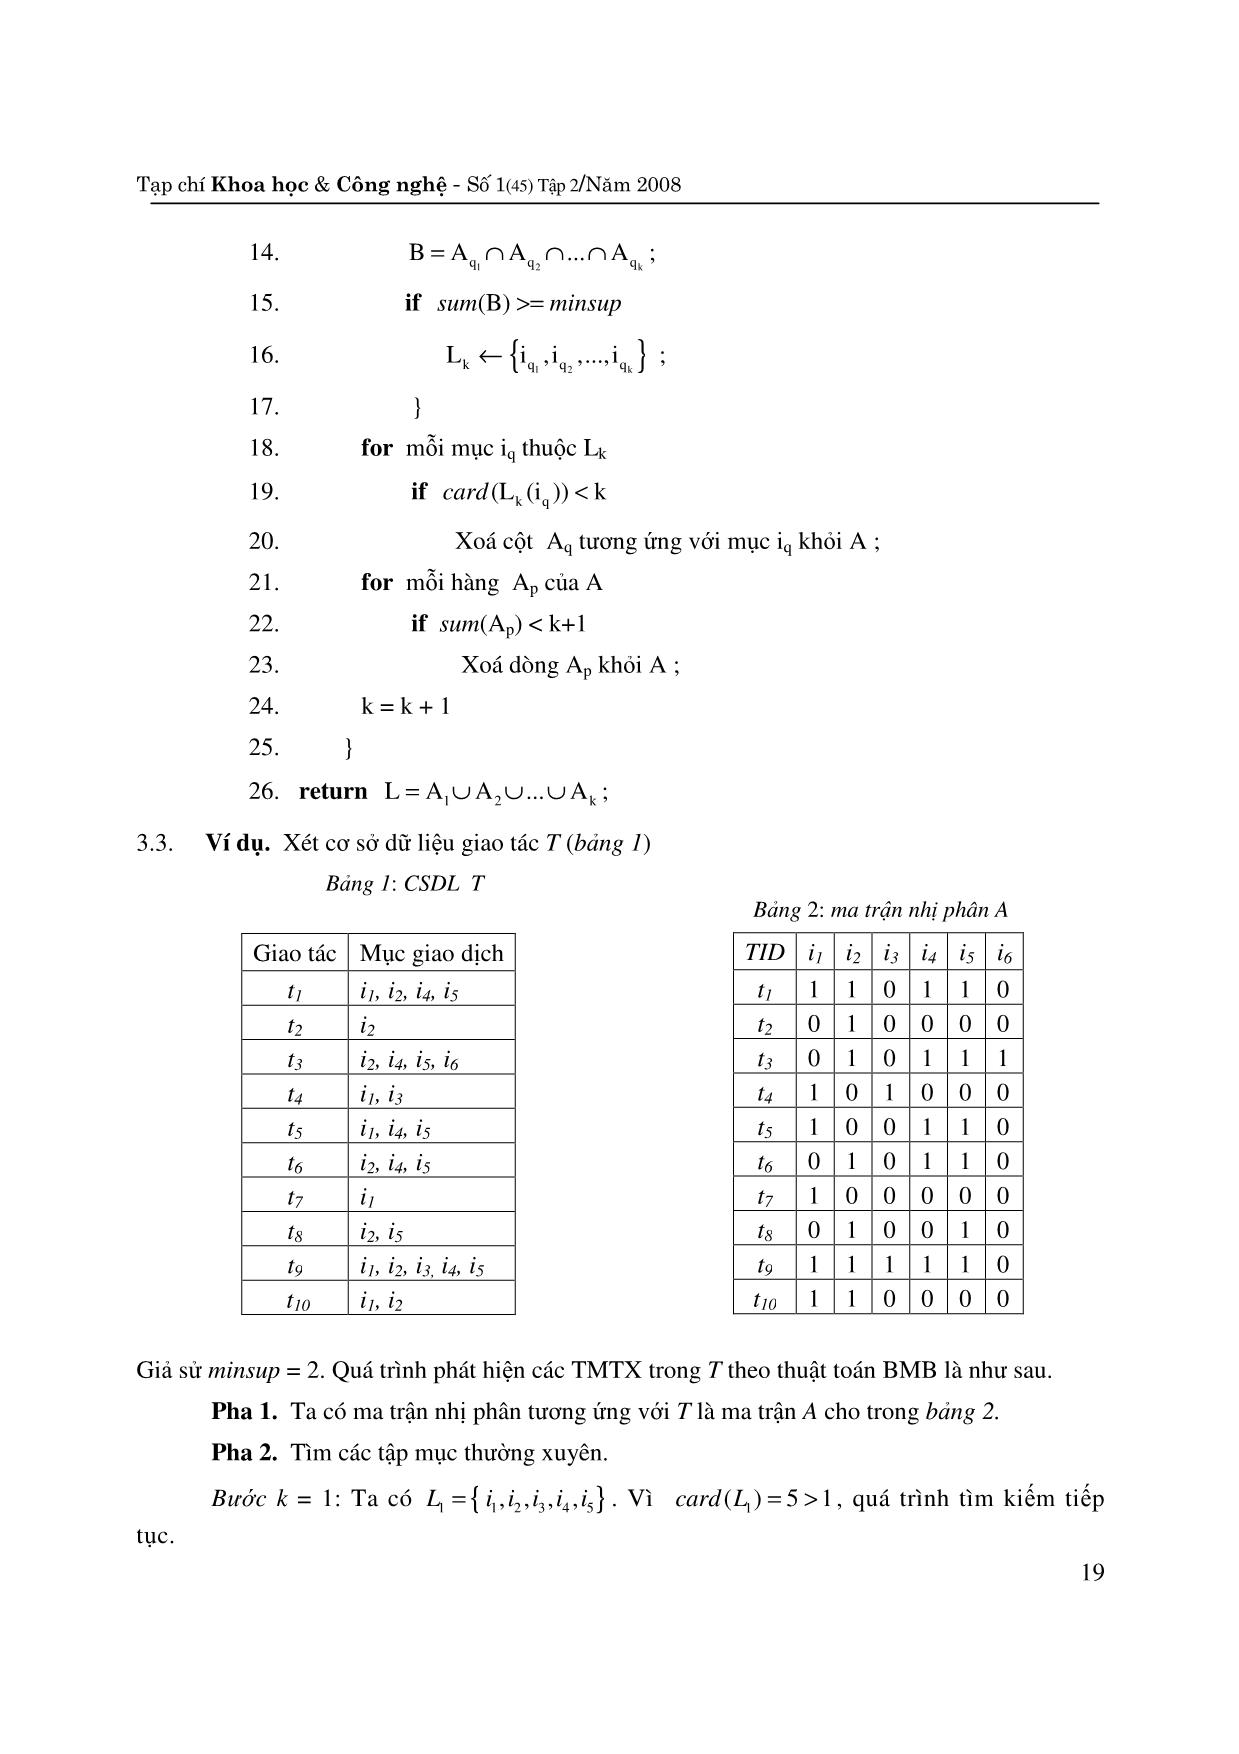 Thuật toán khai phá tập mục thường xuyên dựa trên ma trận nhị phân trang 5